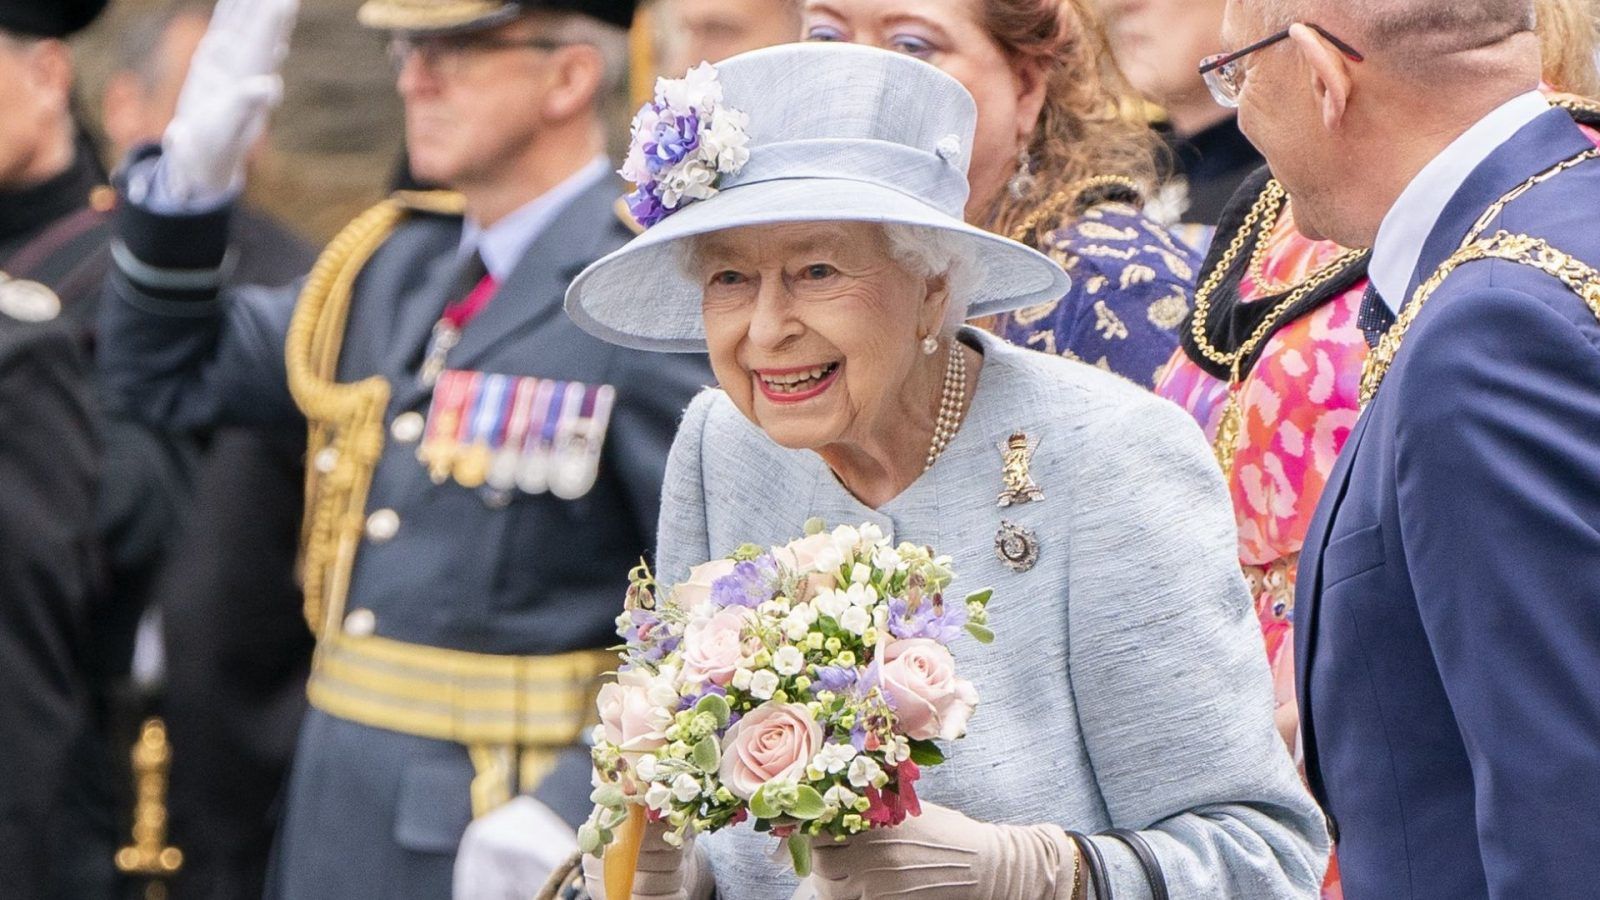 Looking back on key moments in Queen Elizabeth II’s legacy